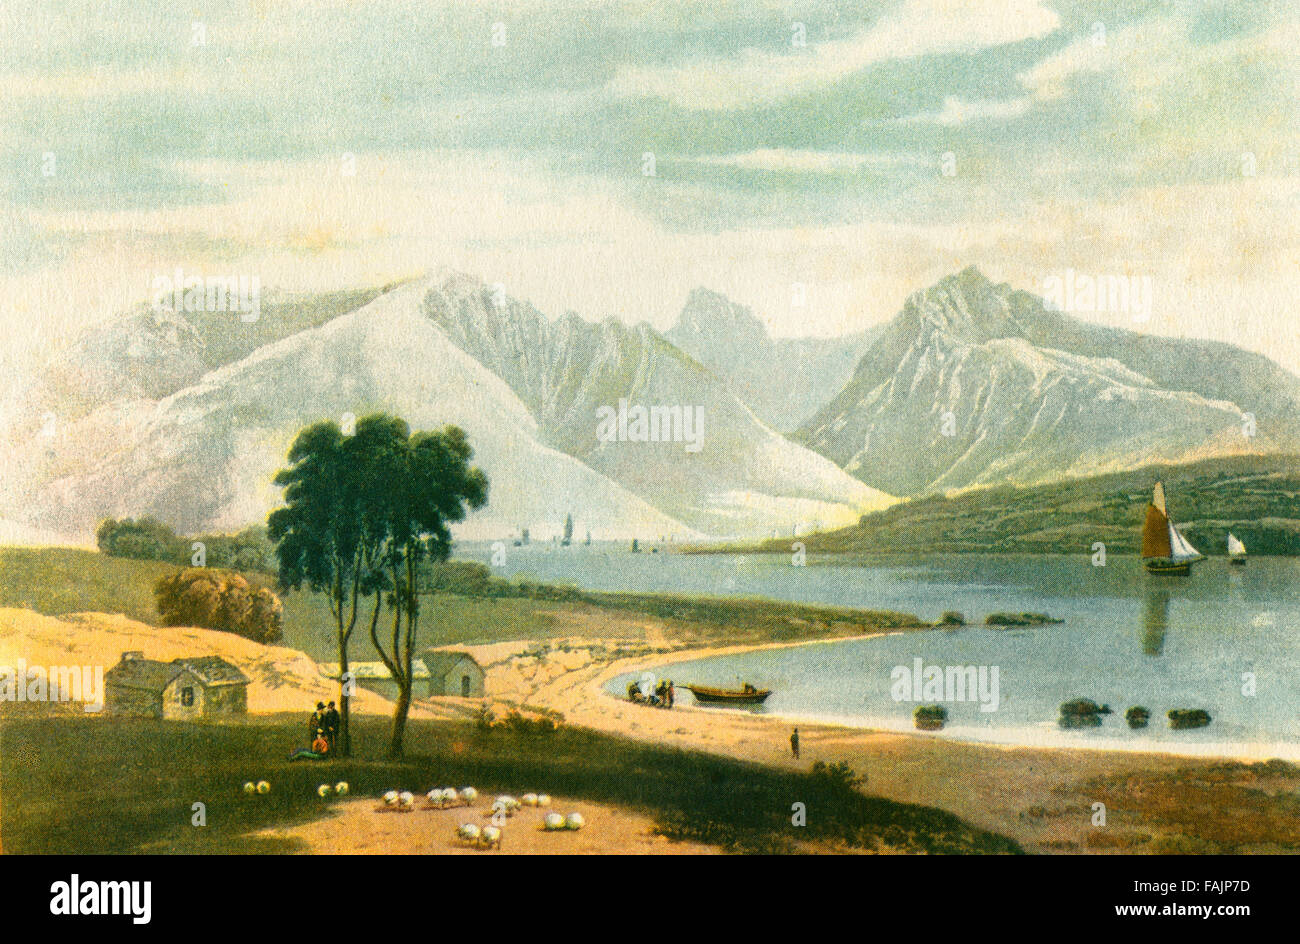 Vista de la isla de Arran, Firth of Clyde, Escocia, desde Ardrossan en 1820. Después de la aguatinta por William Daniell. A partir de la historia de Escocia, publicada en 1942. Foto de stock